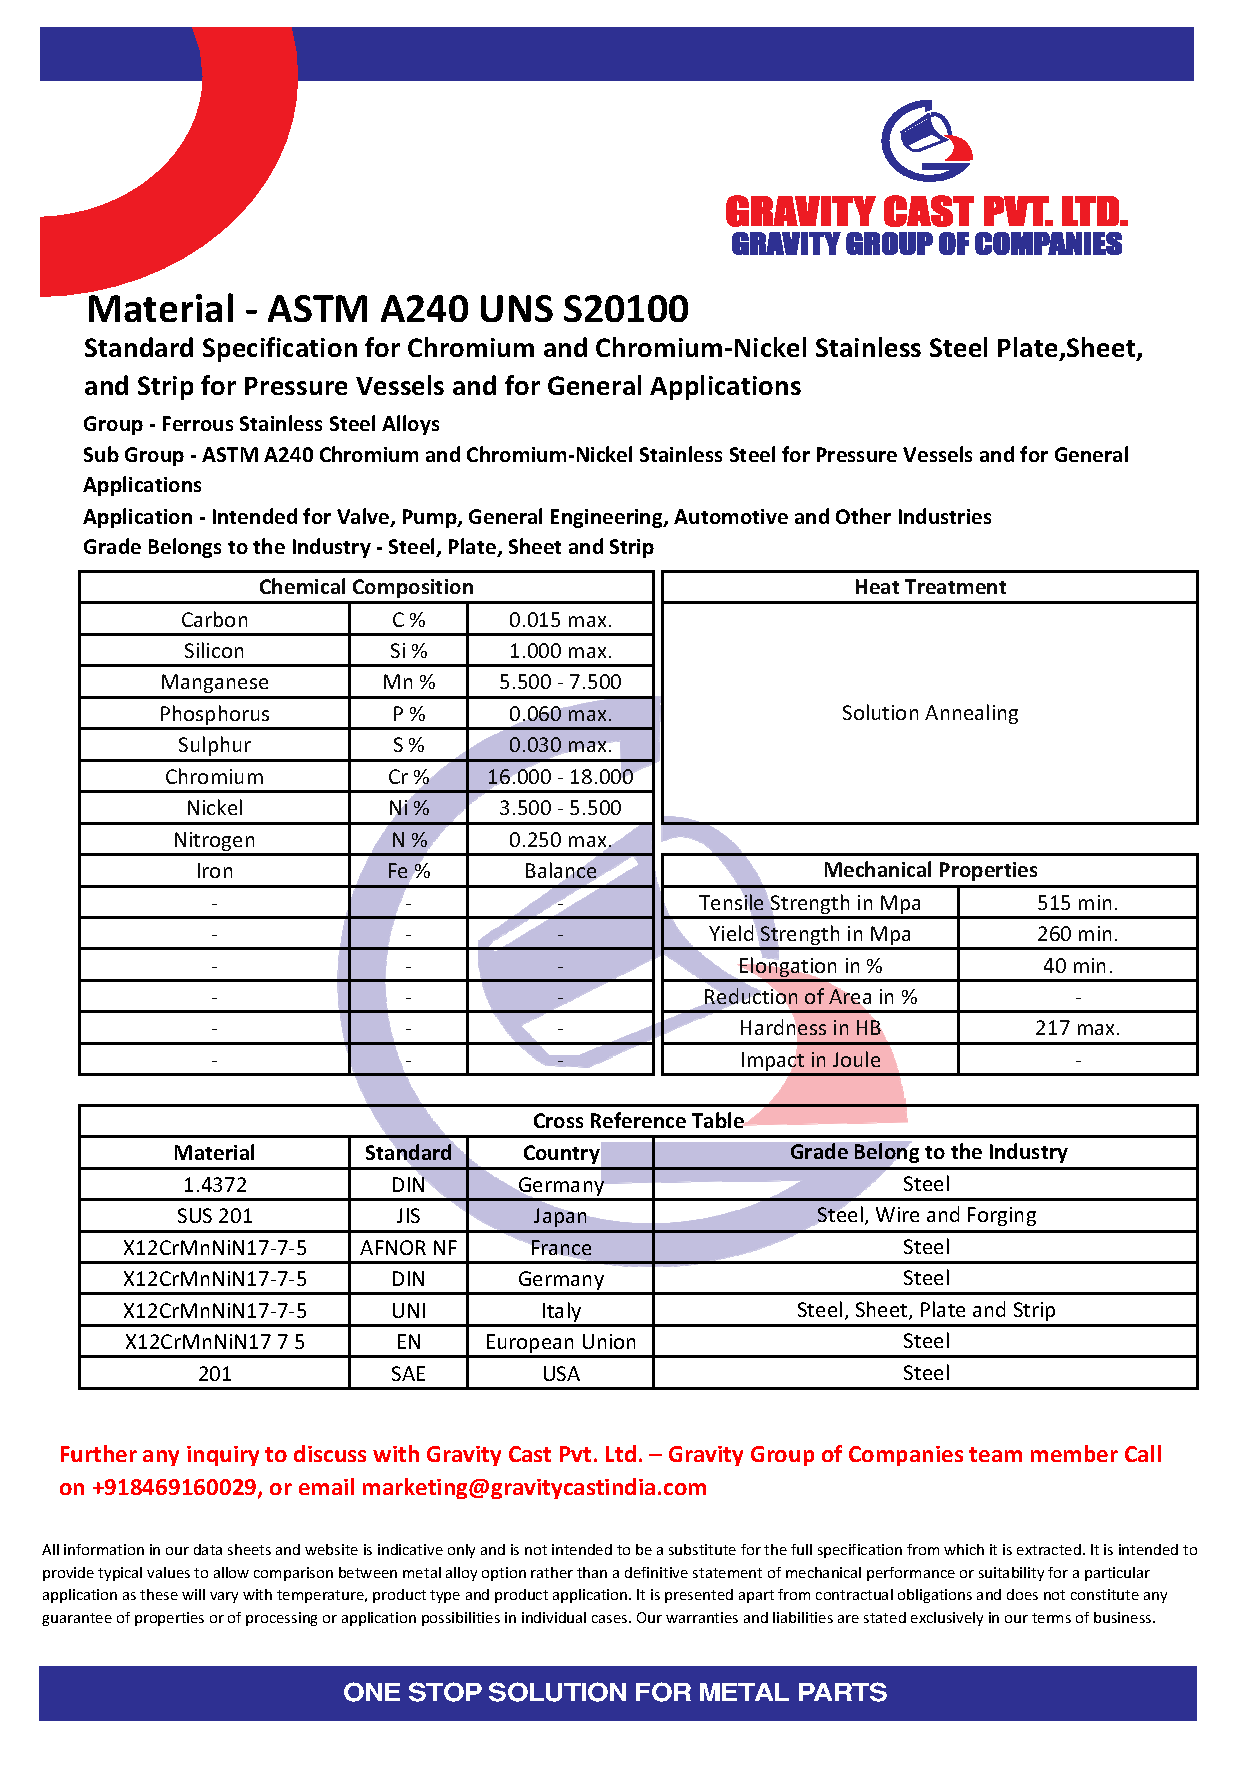 ASTM A240 UNS S20100.pdf